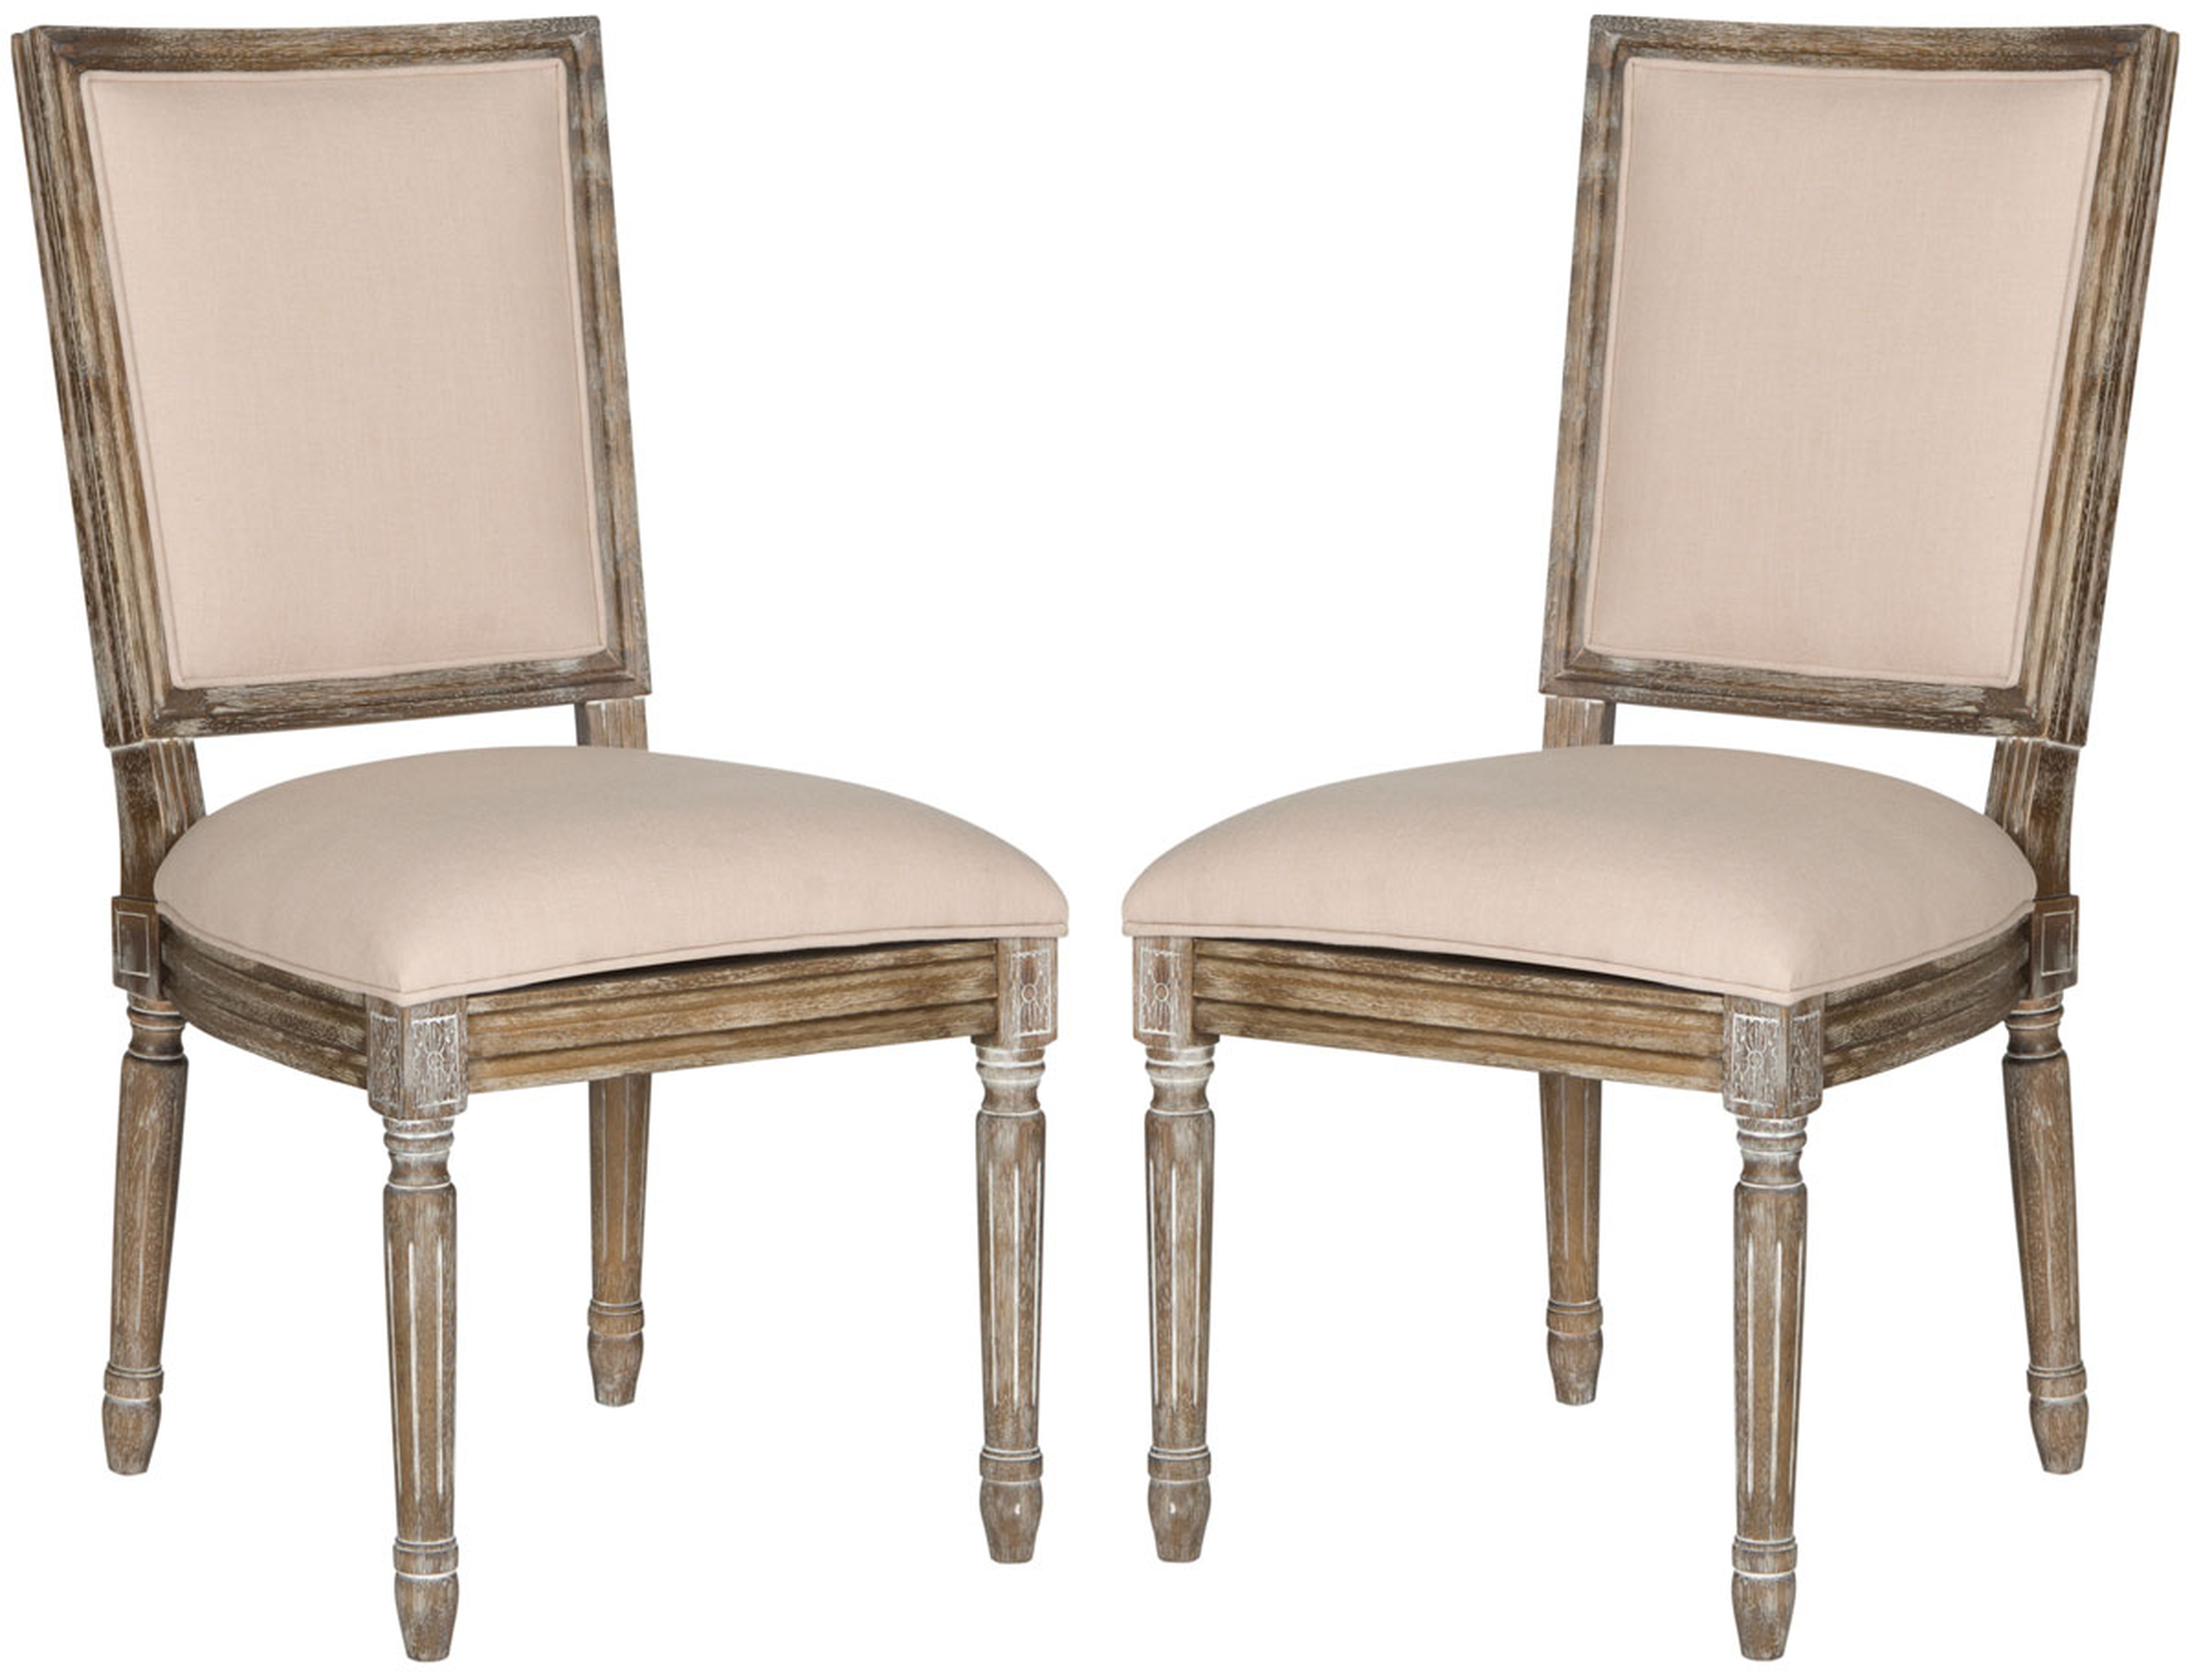 Buchanan 19''H French Brasserie Linen Rect Side Chair (Set of 2) - Beige/Rustic Oak - Arlo Home - Arlo Home